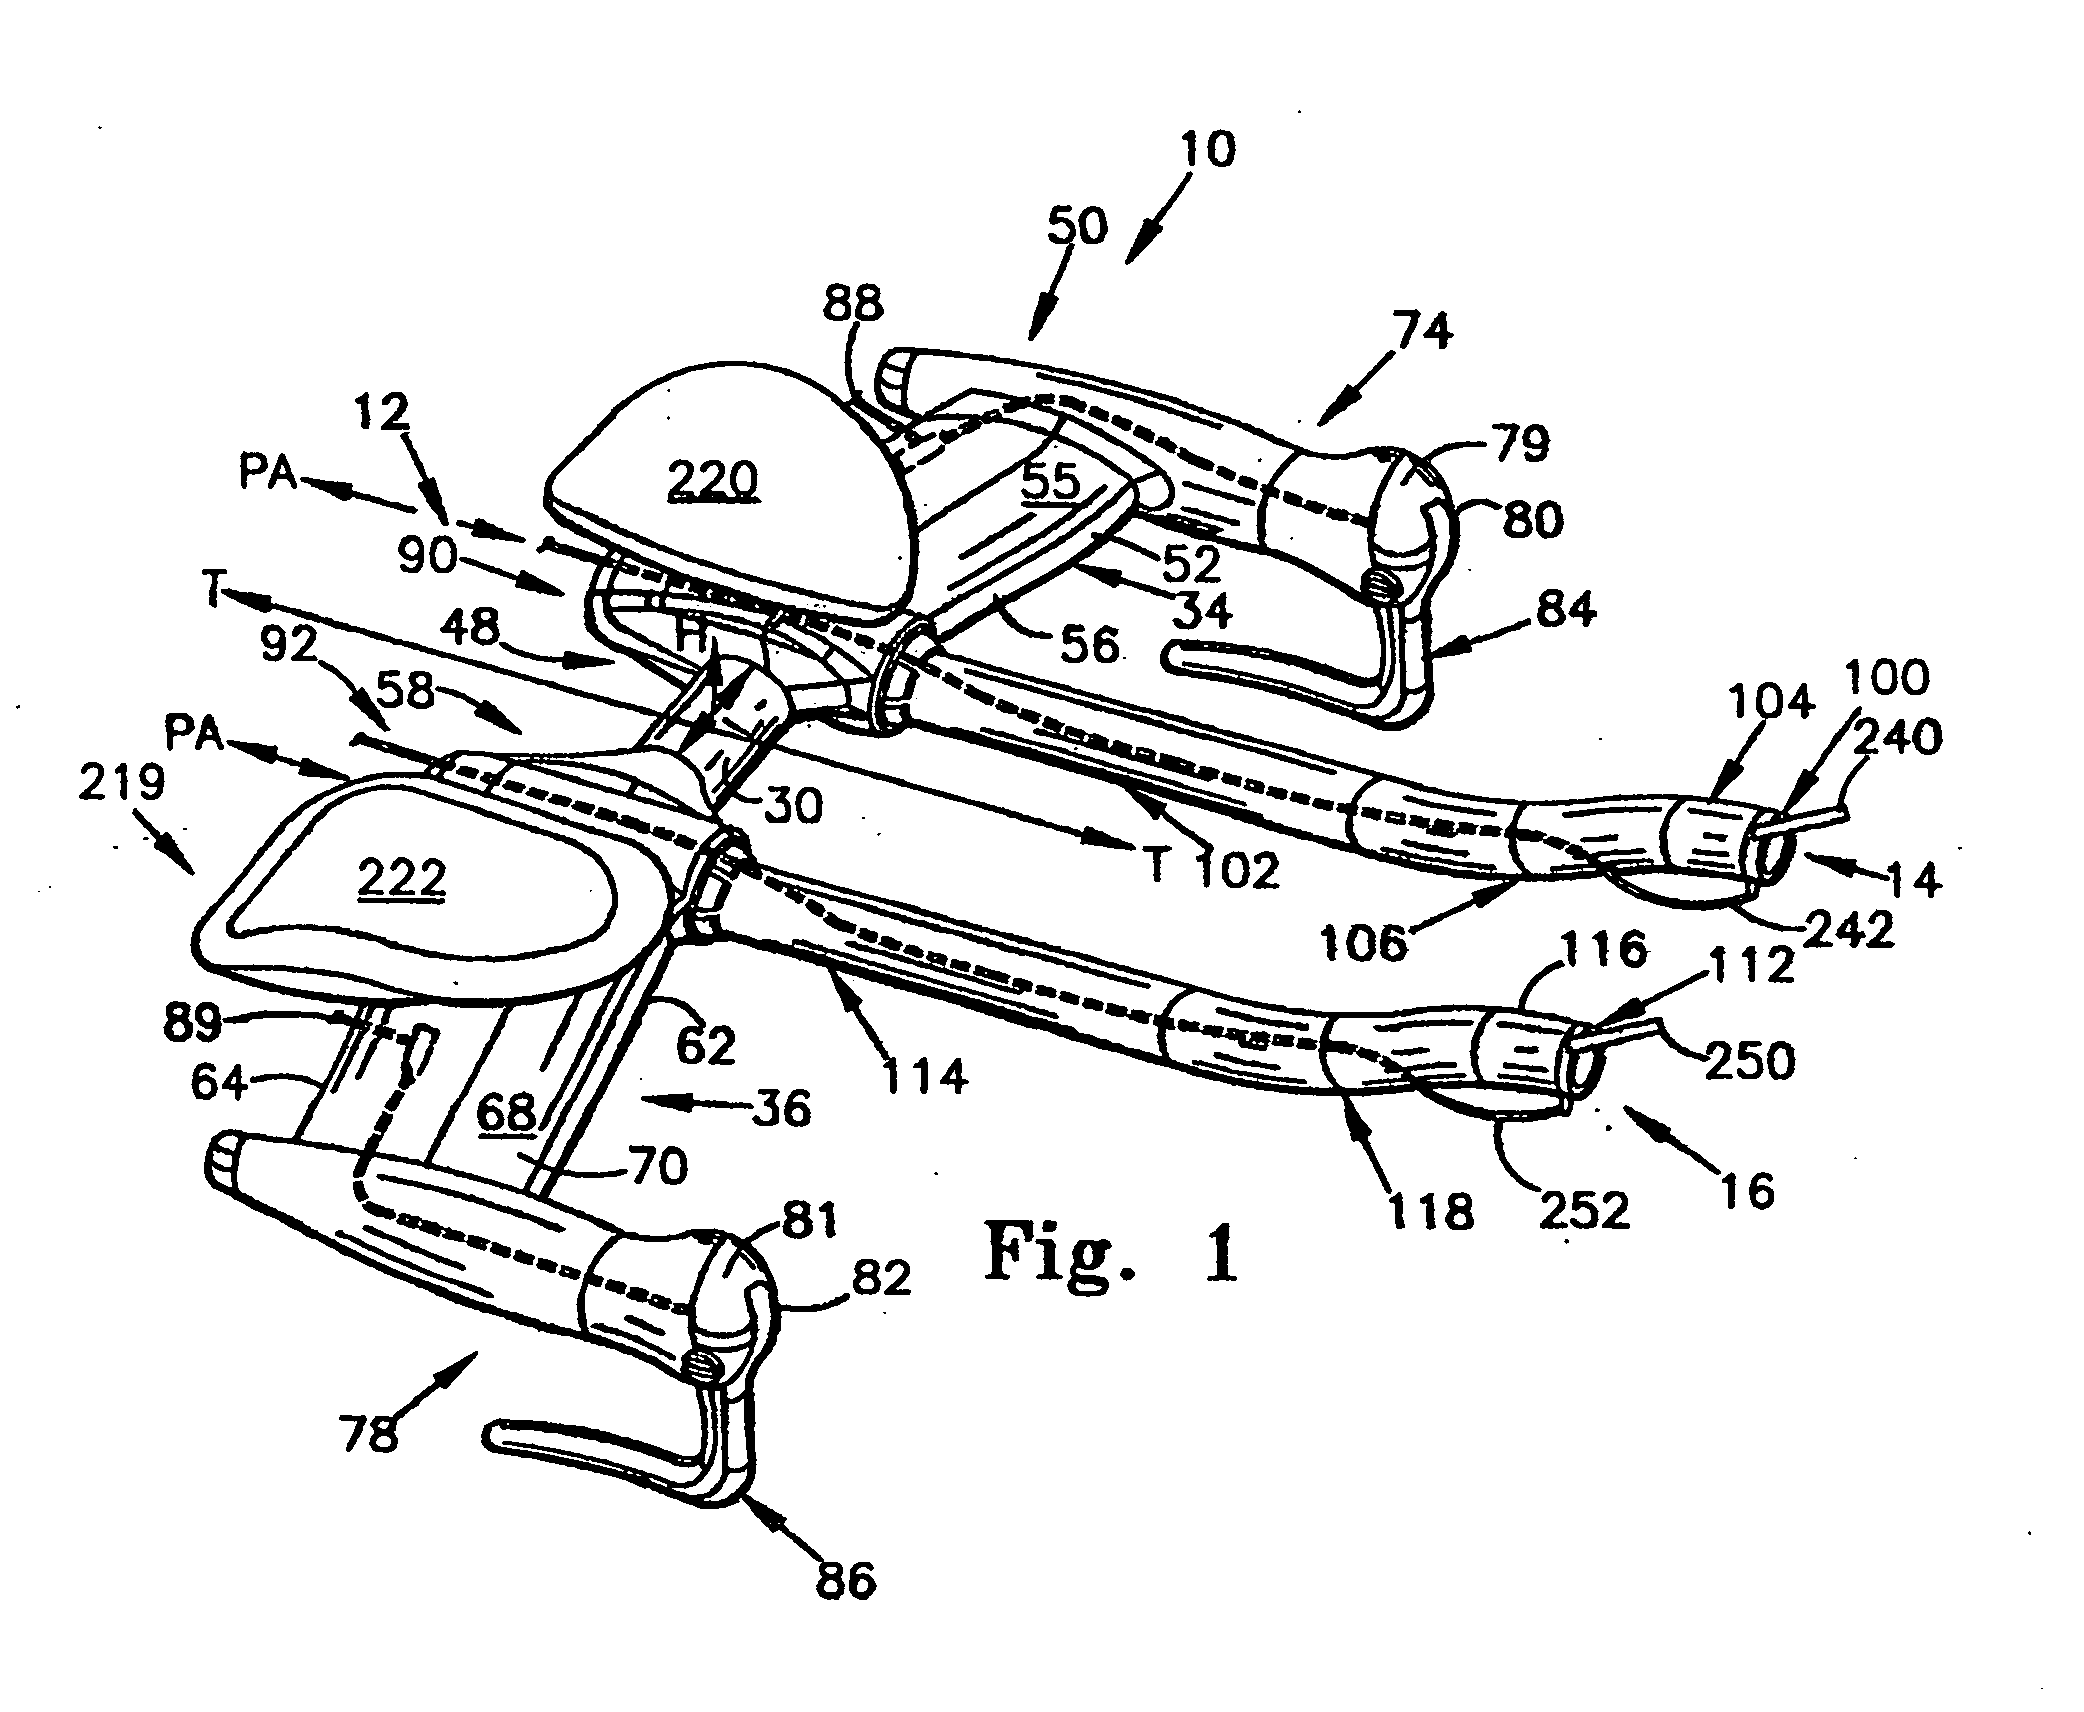 Bicycle handlebar with removable and adjustable aerobar